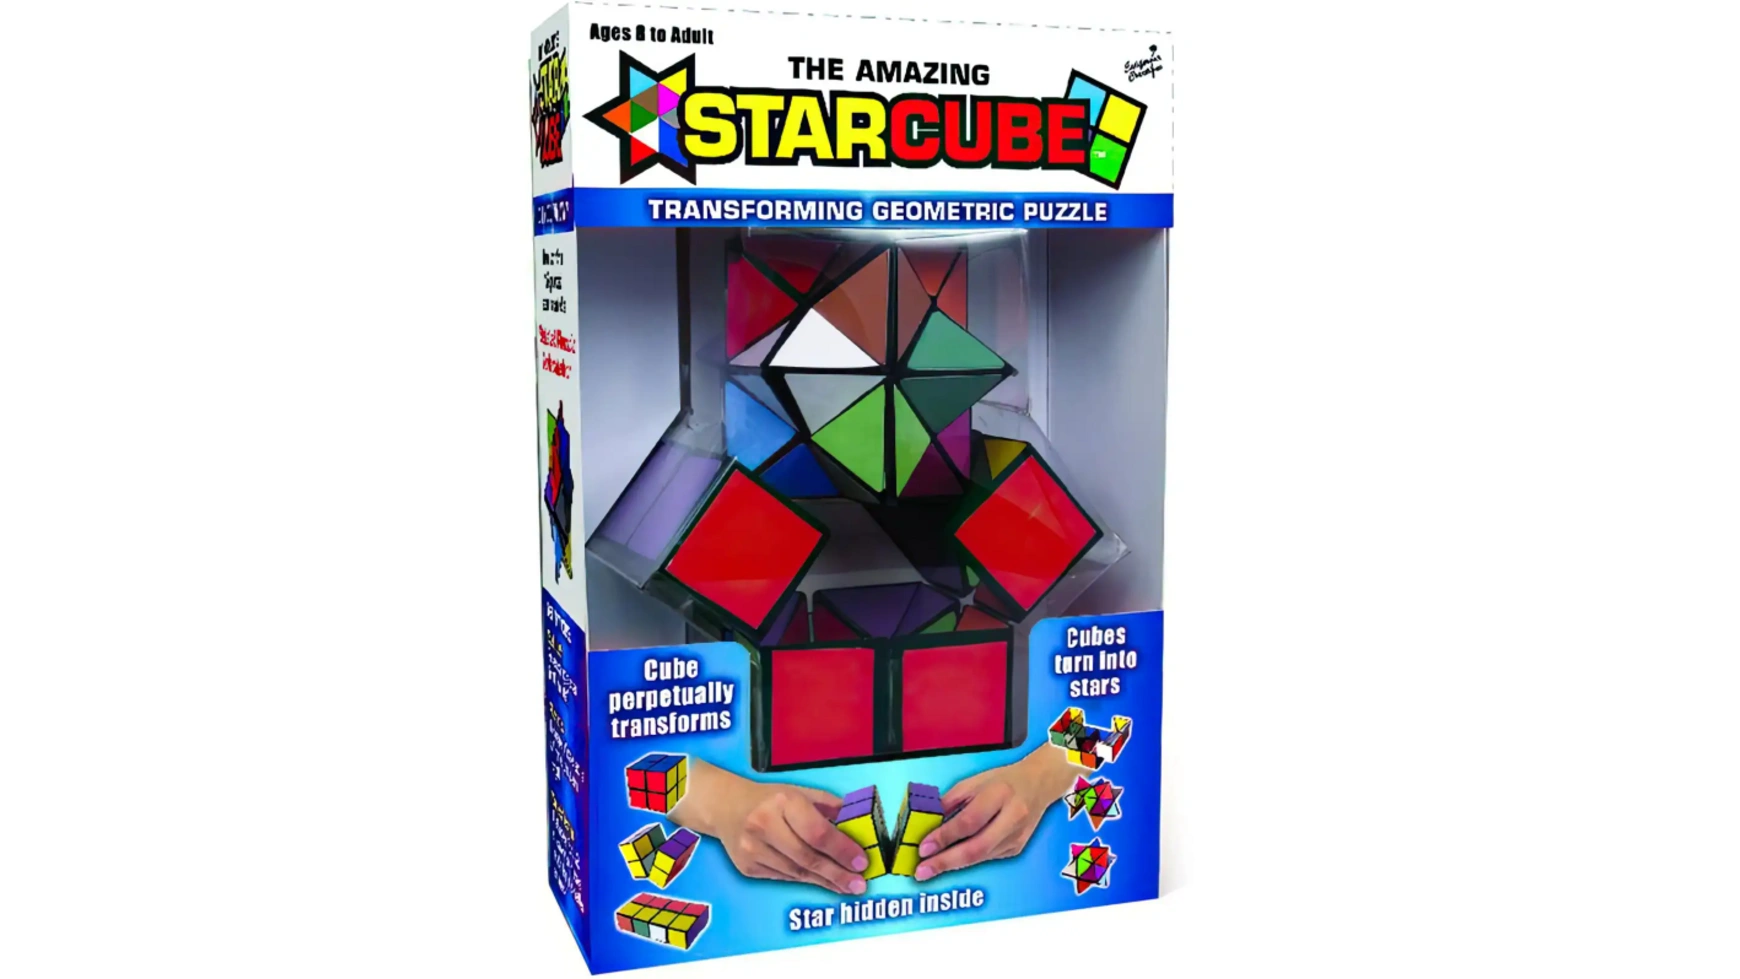 Звездный волшебный куб Elliot StarCube игра на ловкость и терпение, 5,5 х 5,5 см, красочный магнитный магический куб пазл игрушки пирамида куб магниты скорость профессиональный кубик рубика